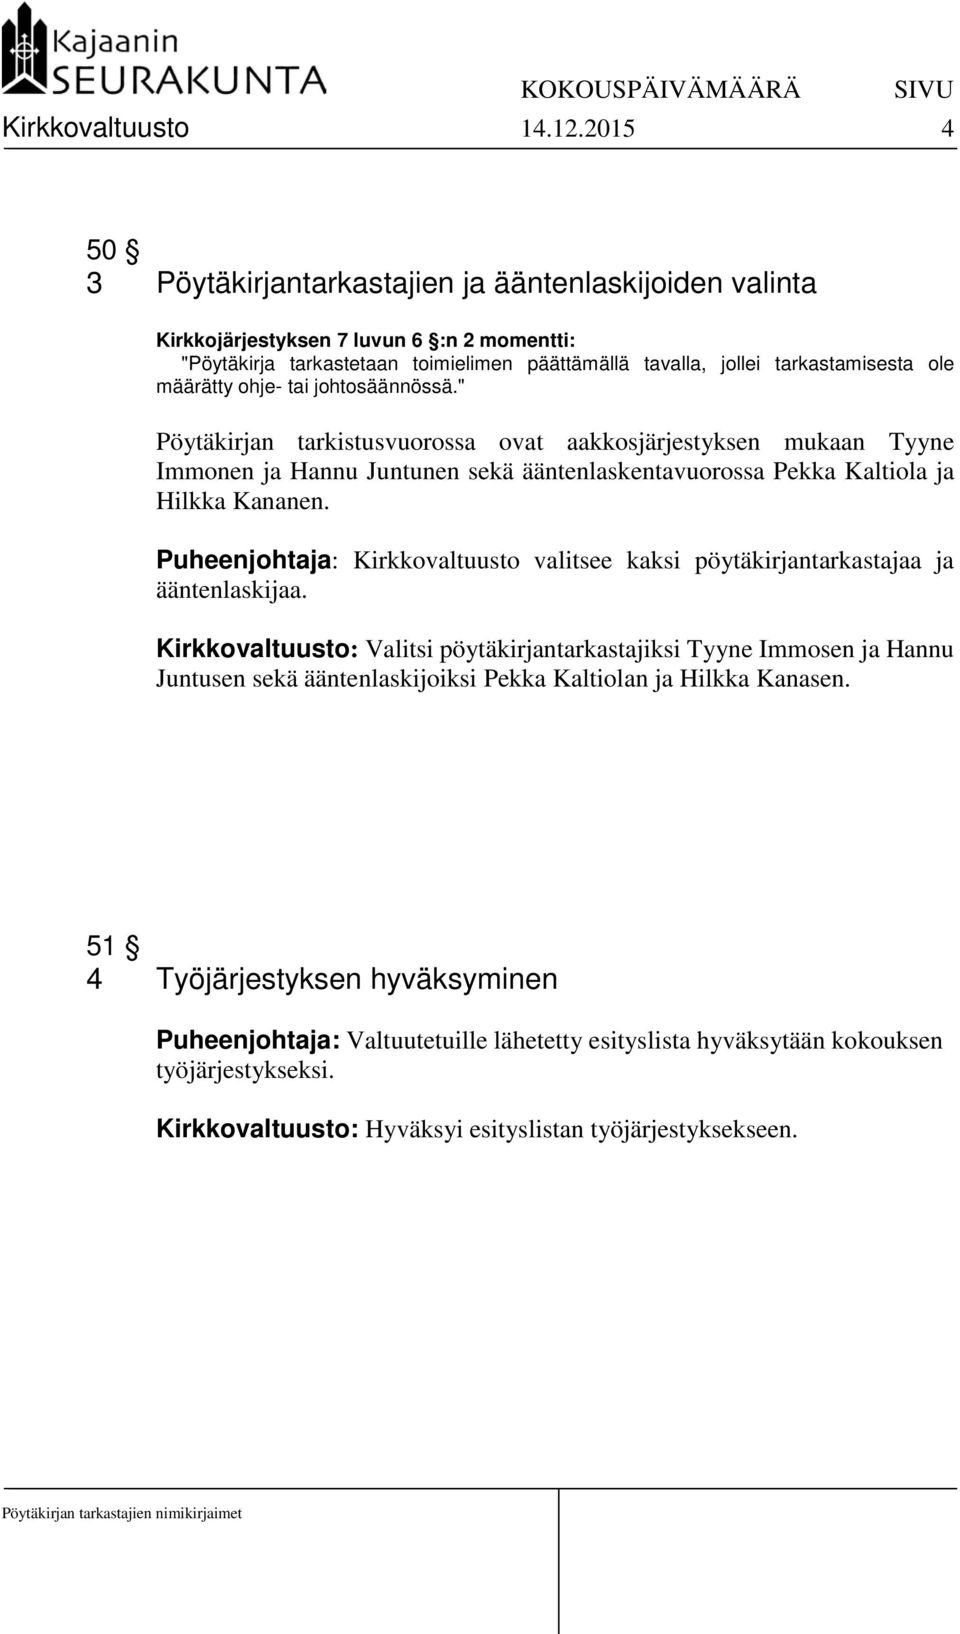 määrätty ohje- tai johtosäännössä." Pöytäkirjan tarkistusvuorossa ovat aakkosjärjestyksen mukaan Tyyne Immonen ja Hannu Juntunen sekä ääntenlaskentavuorossa Pekka Kaltiola ja Hilkka Kananen.